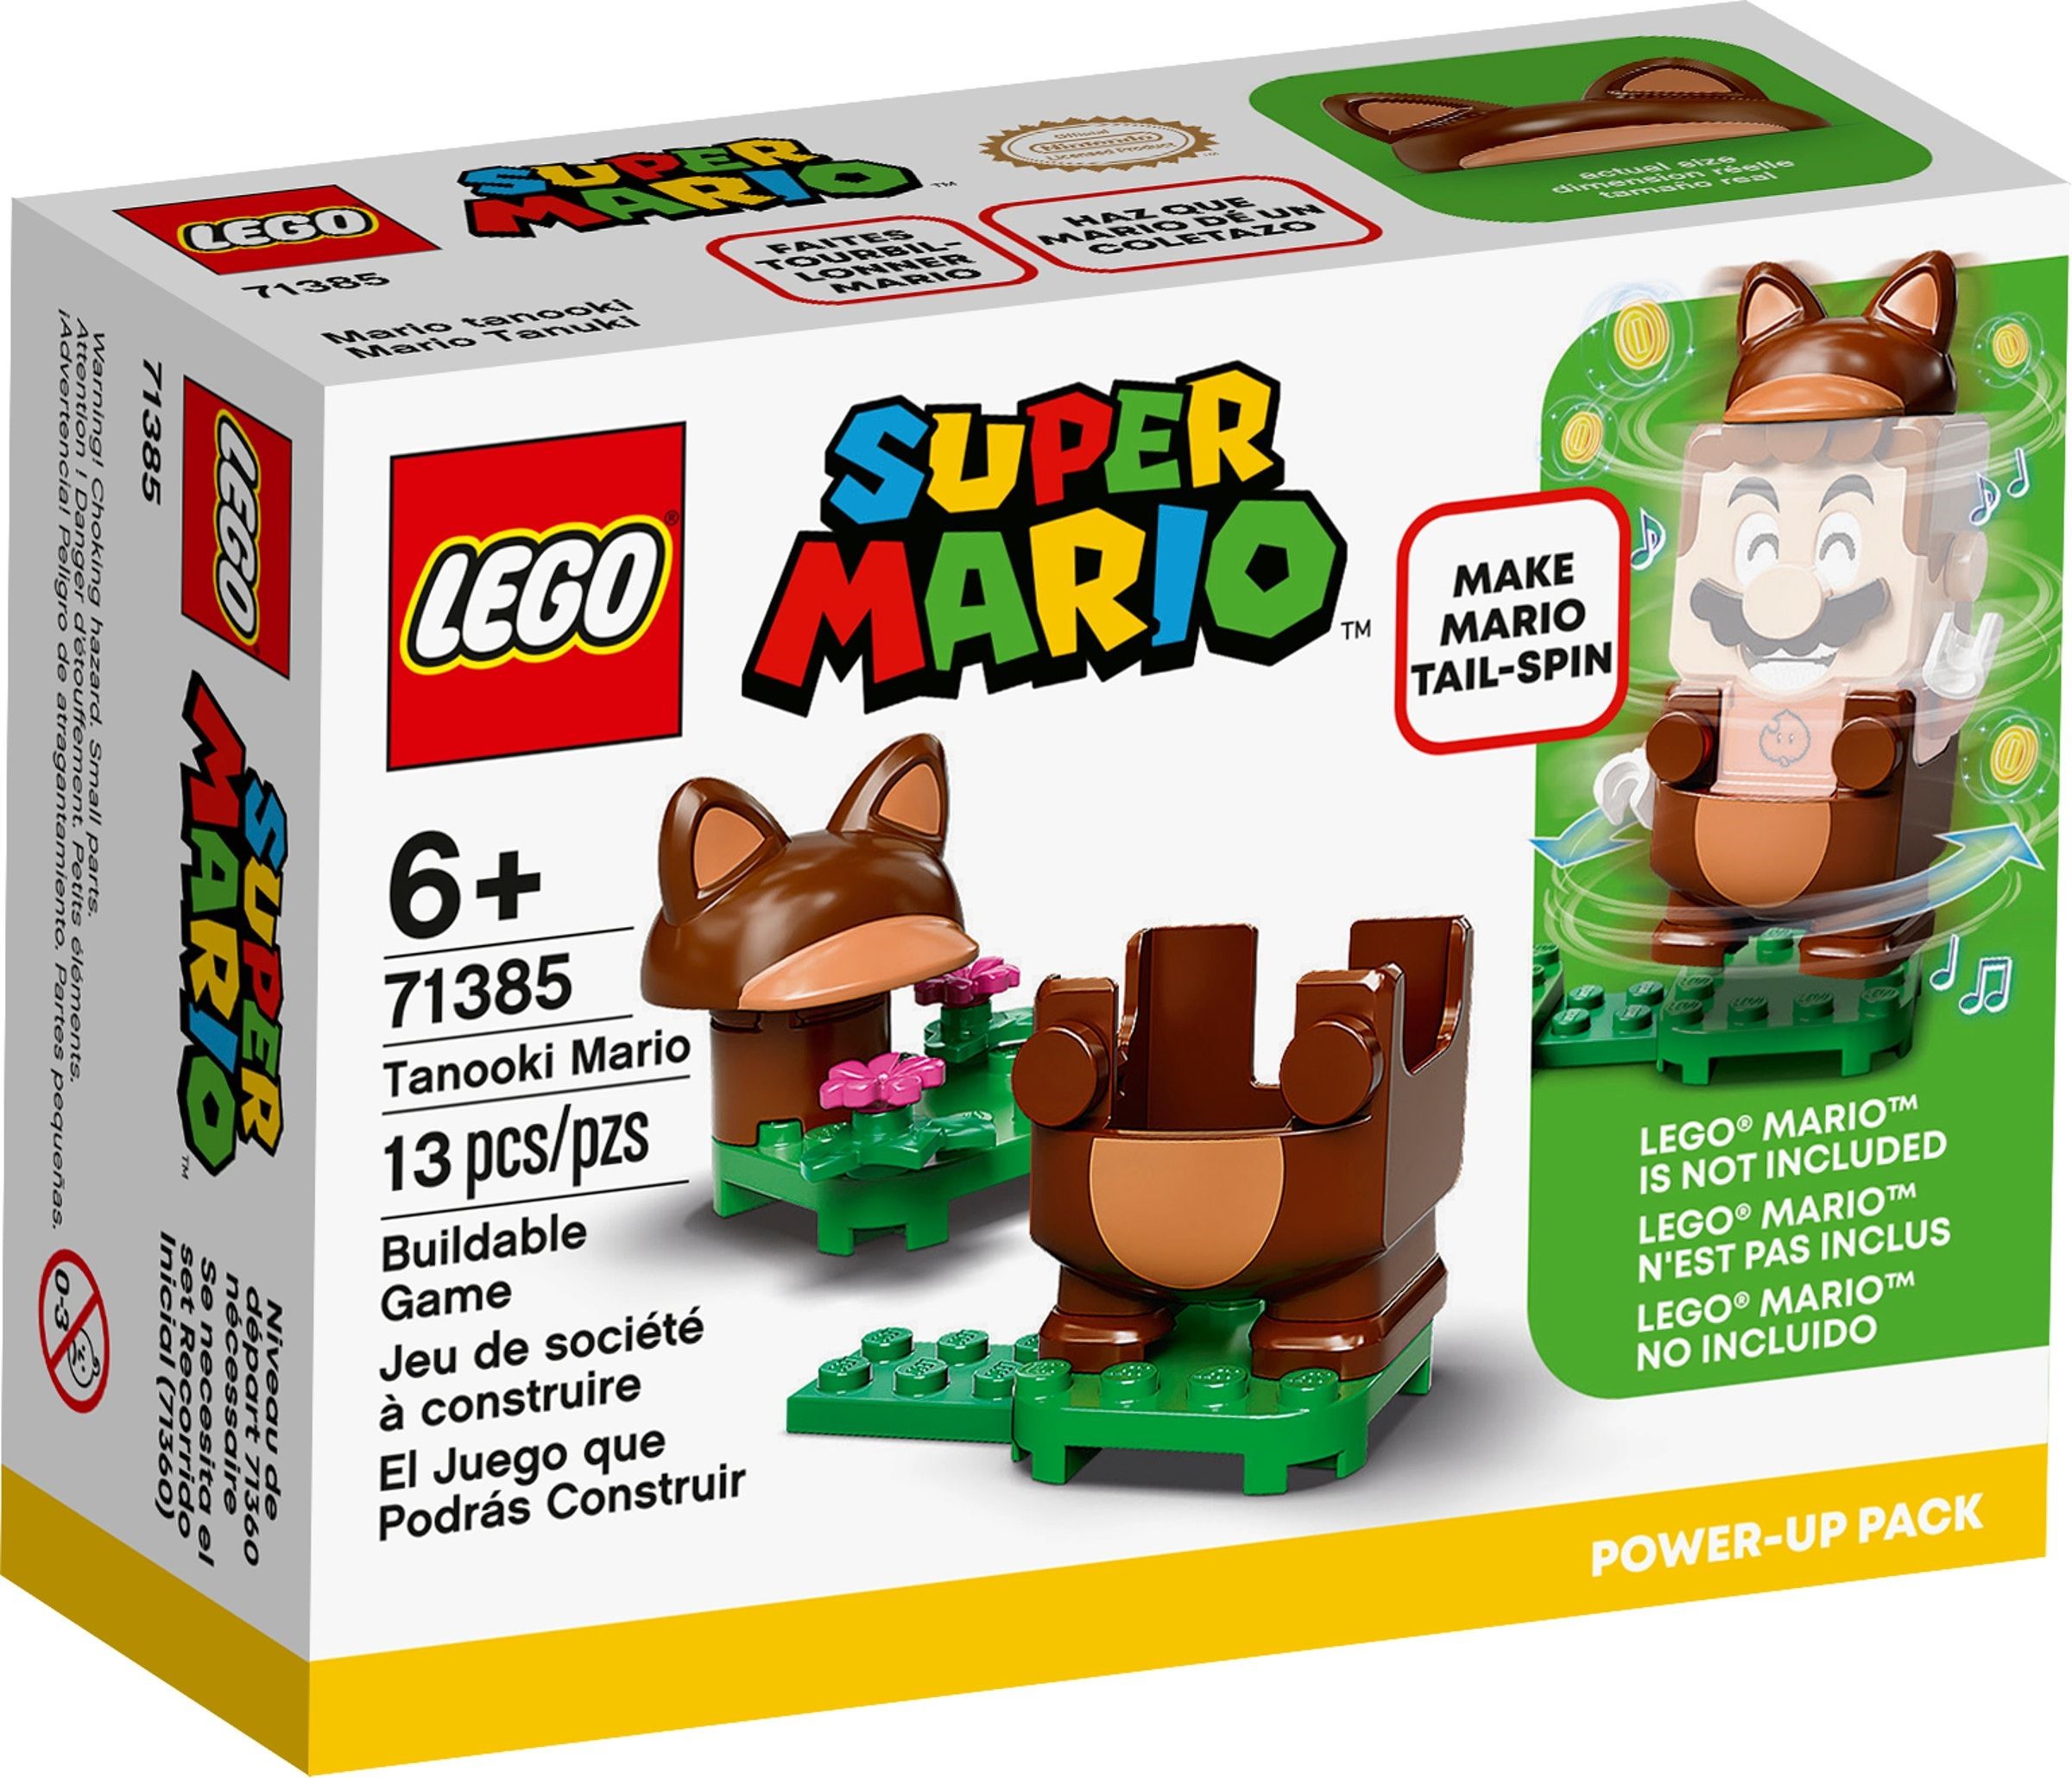 LEGO Super Mario 71385 Tanooki Mario Power-Up Pack